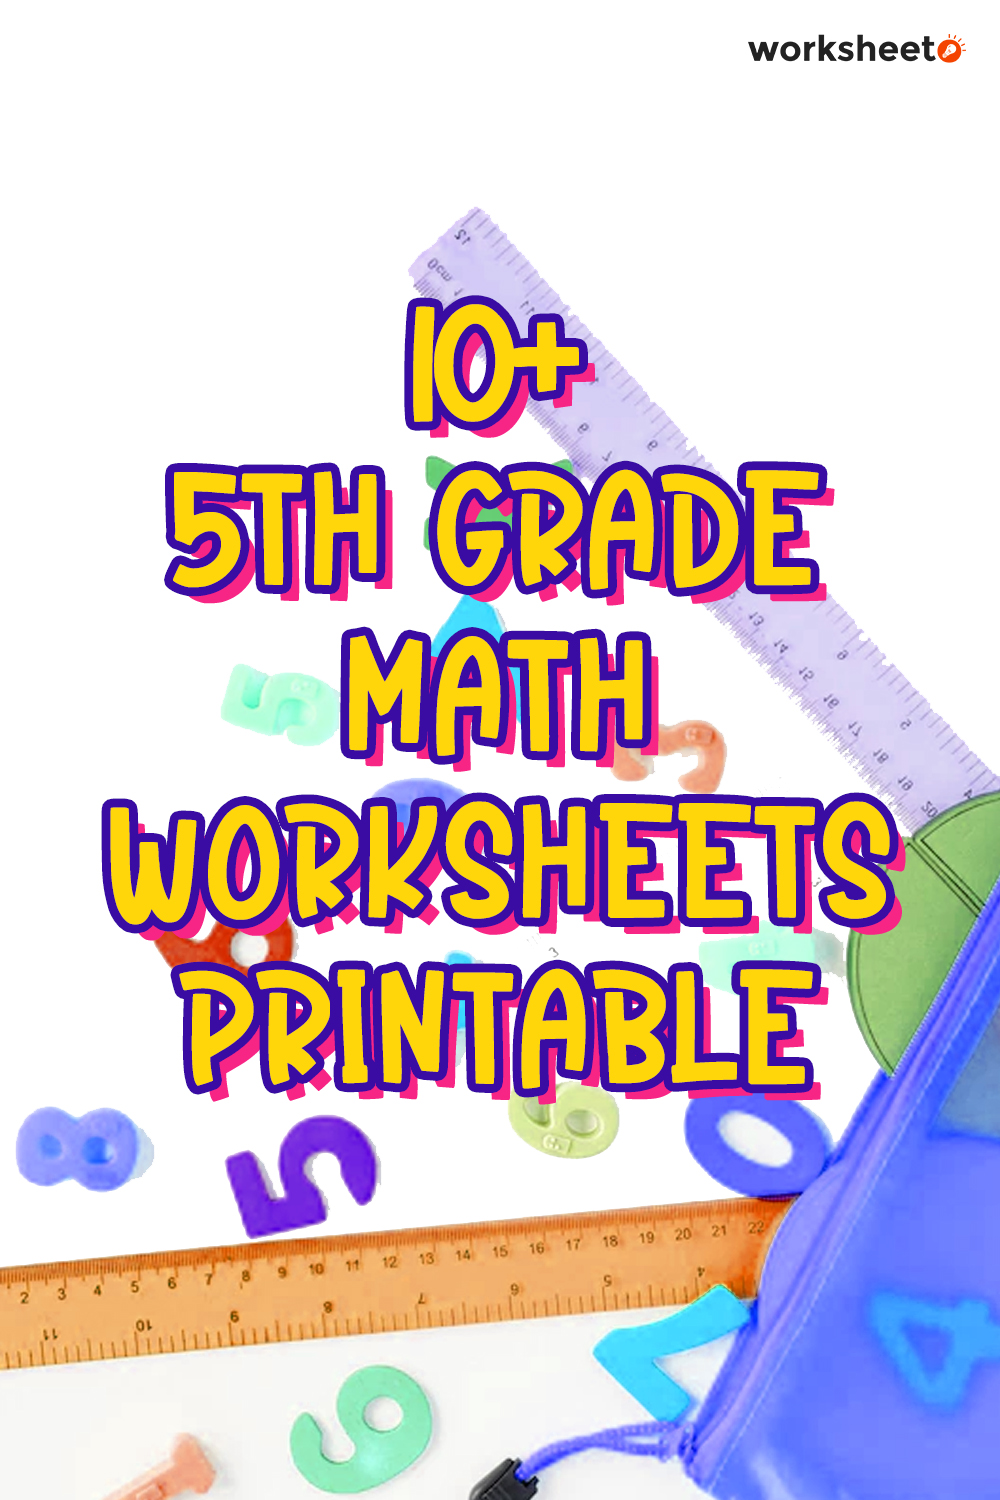 11 5th Grade Math Worksheets Printable Free PDF at worksheeto com